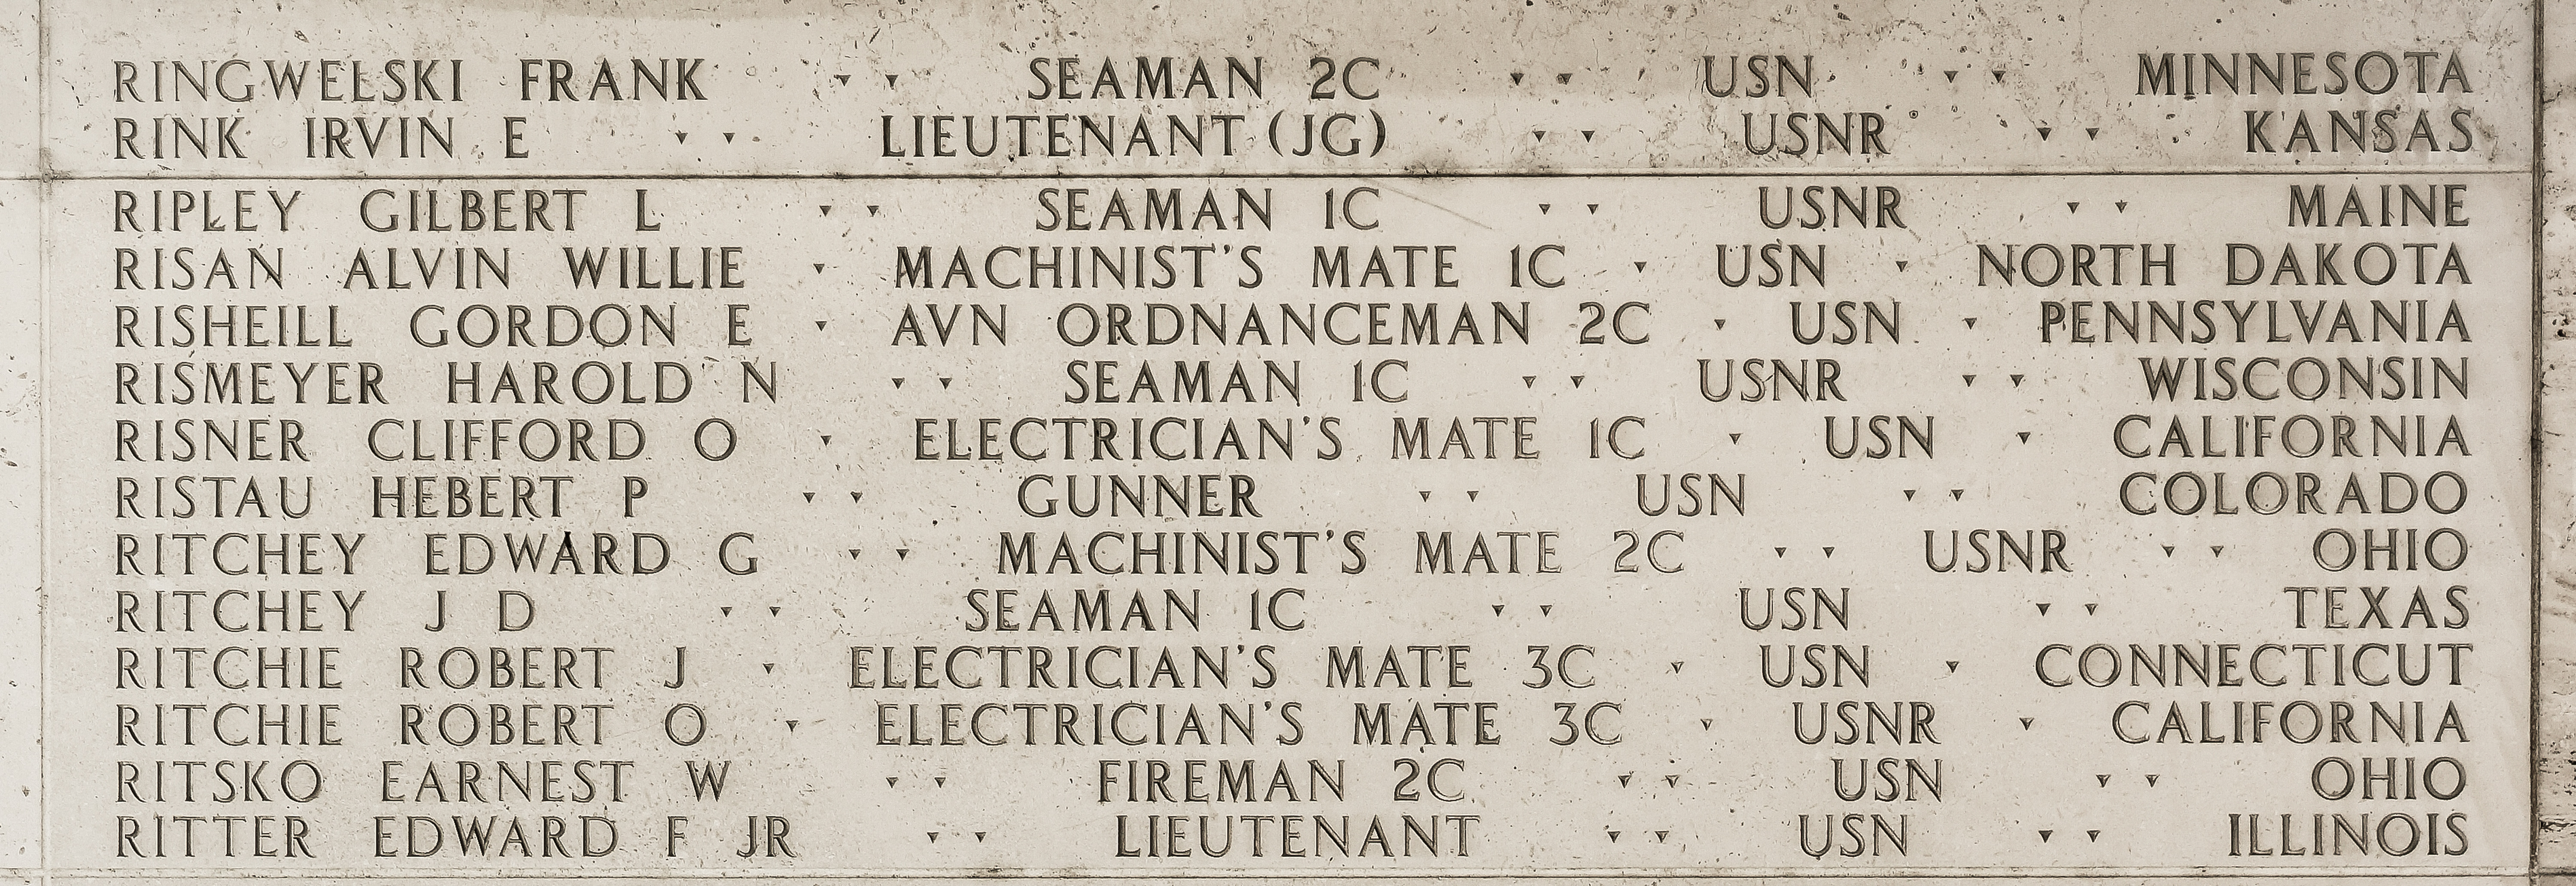 Robert J. Ritchie, Electrician's Mate Third Class